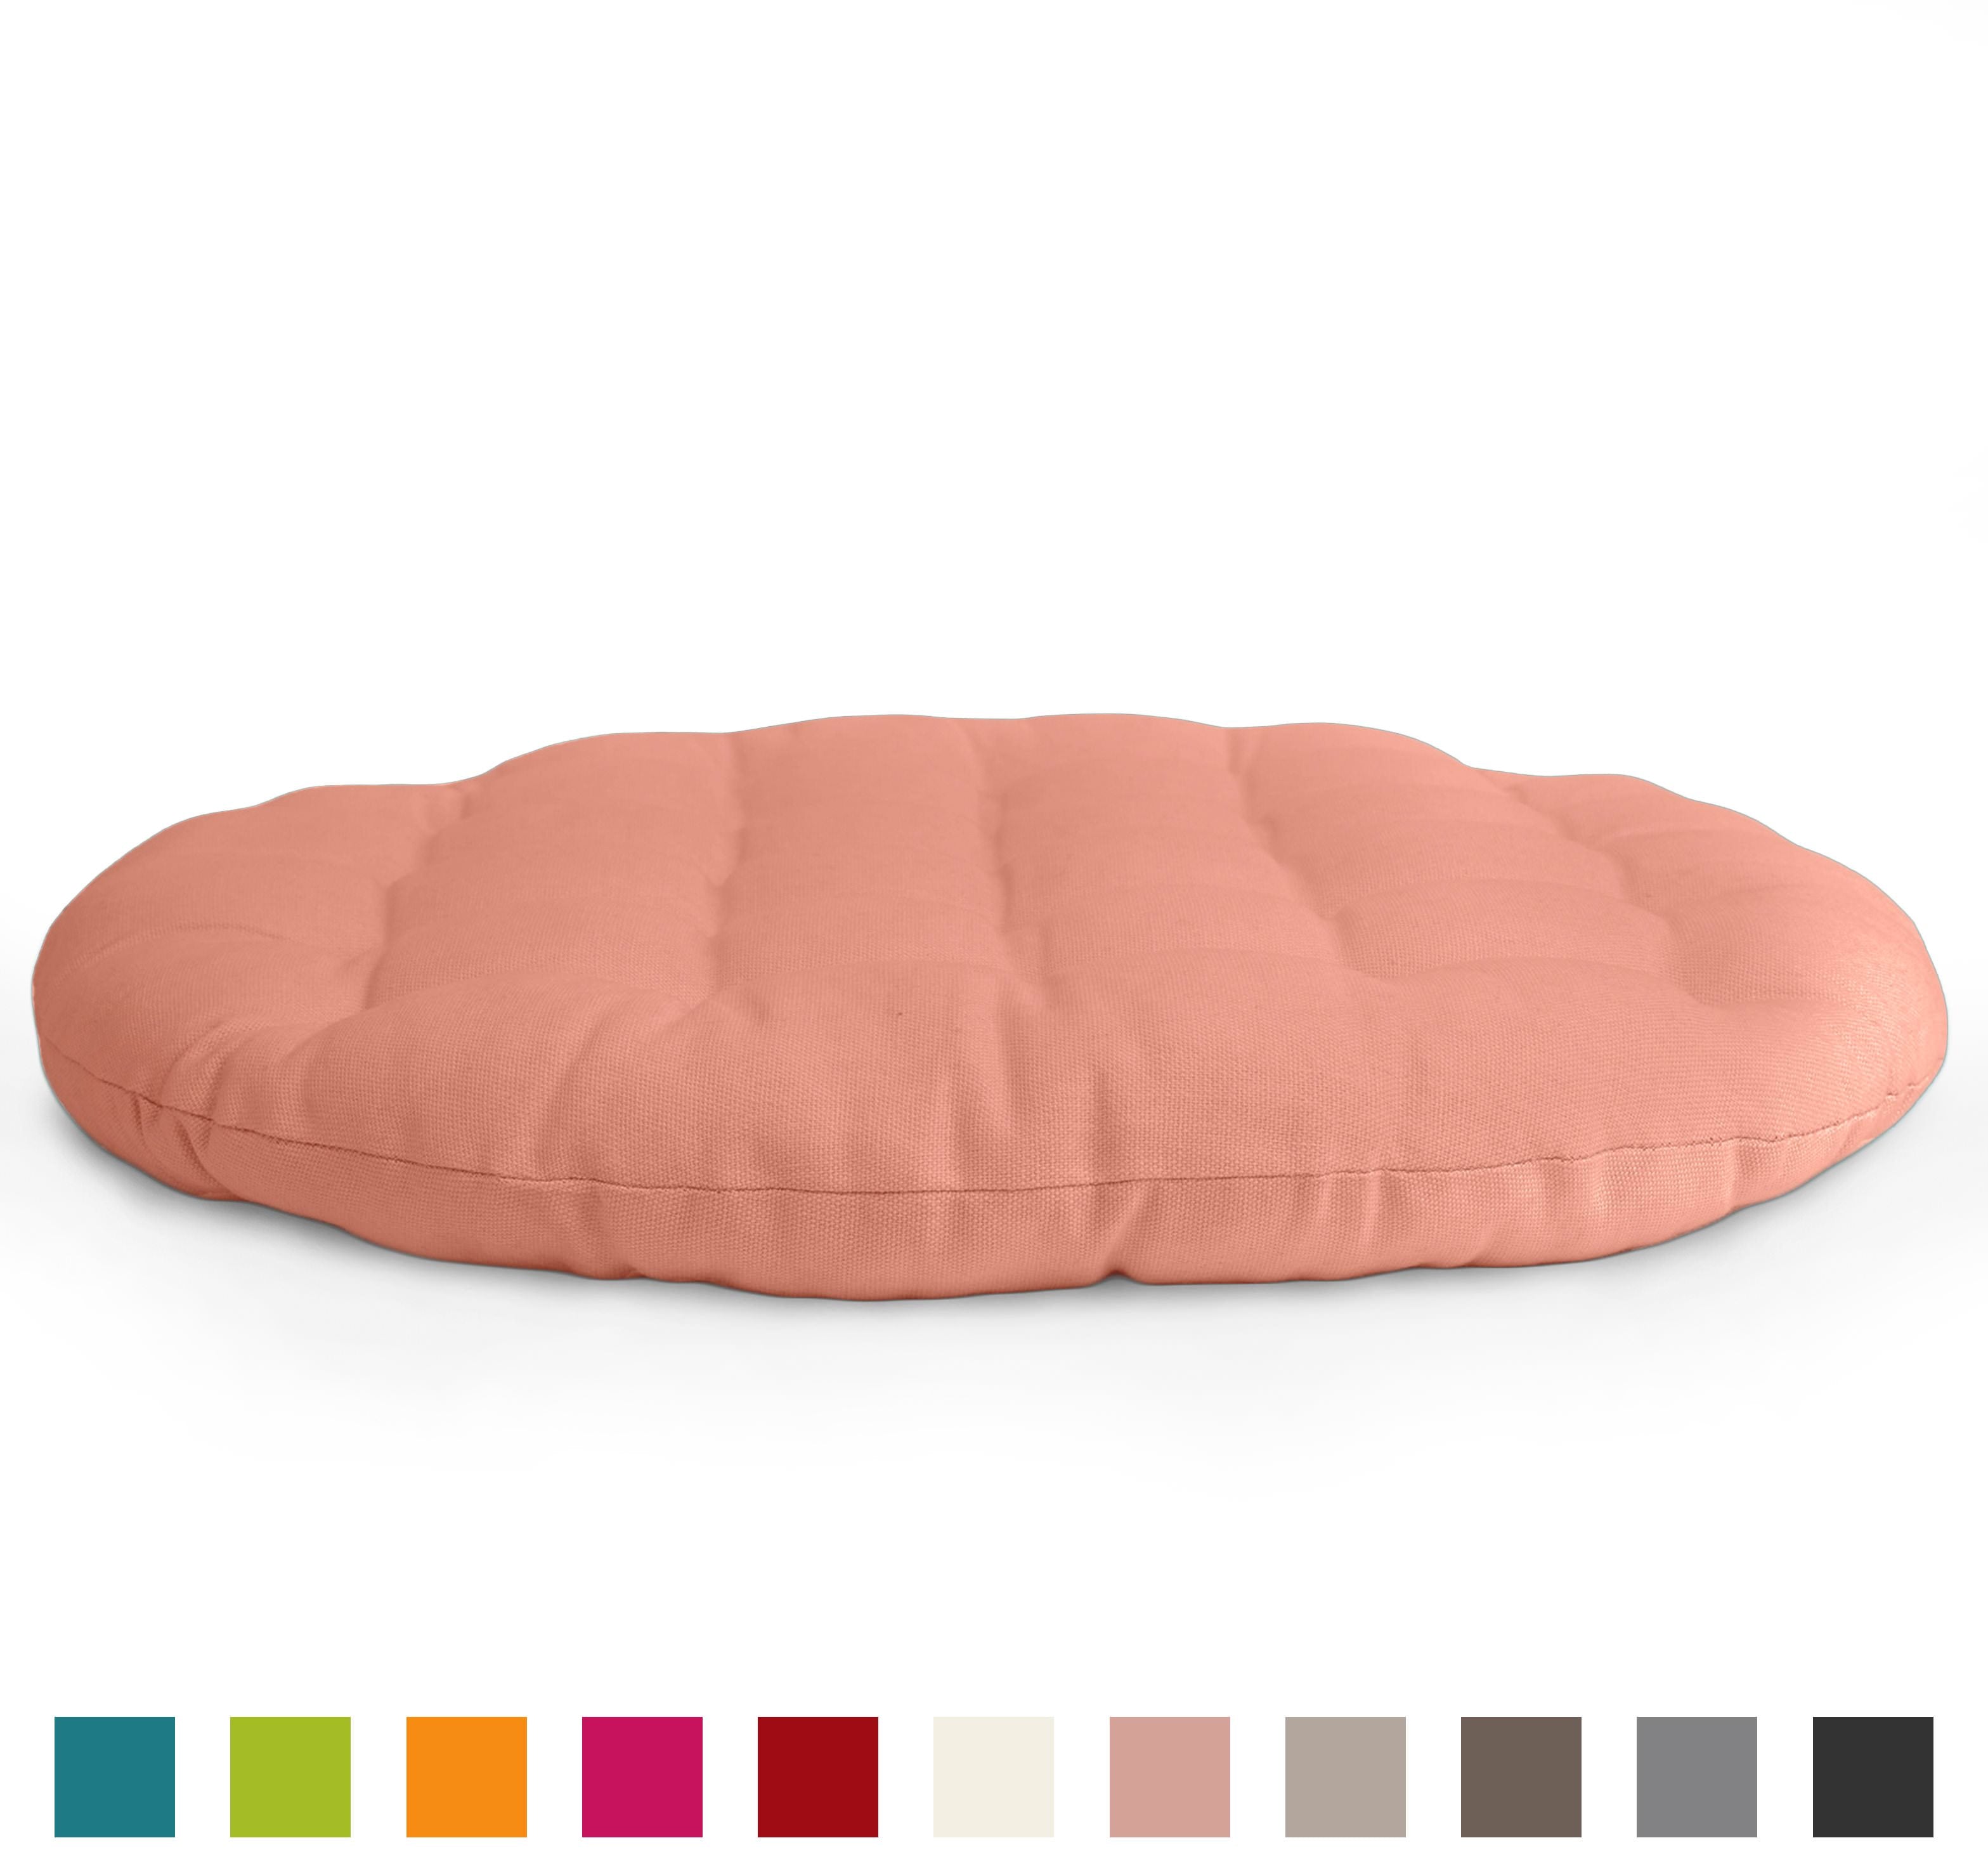 Encasa Homes Zafu Yoga 20" (50cm) Floor Cushion for Meditation - Powder Pink